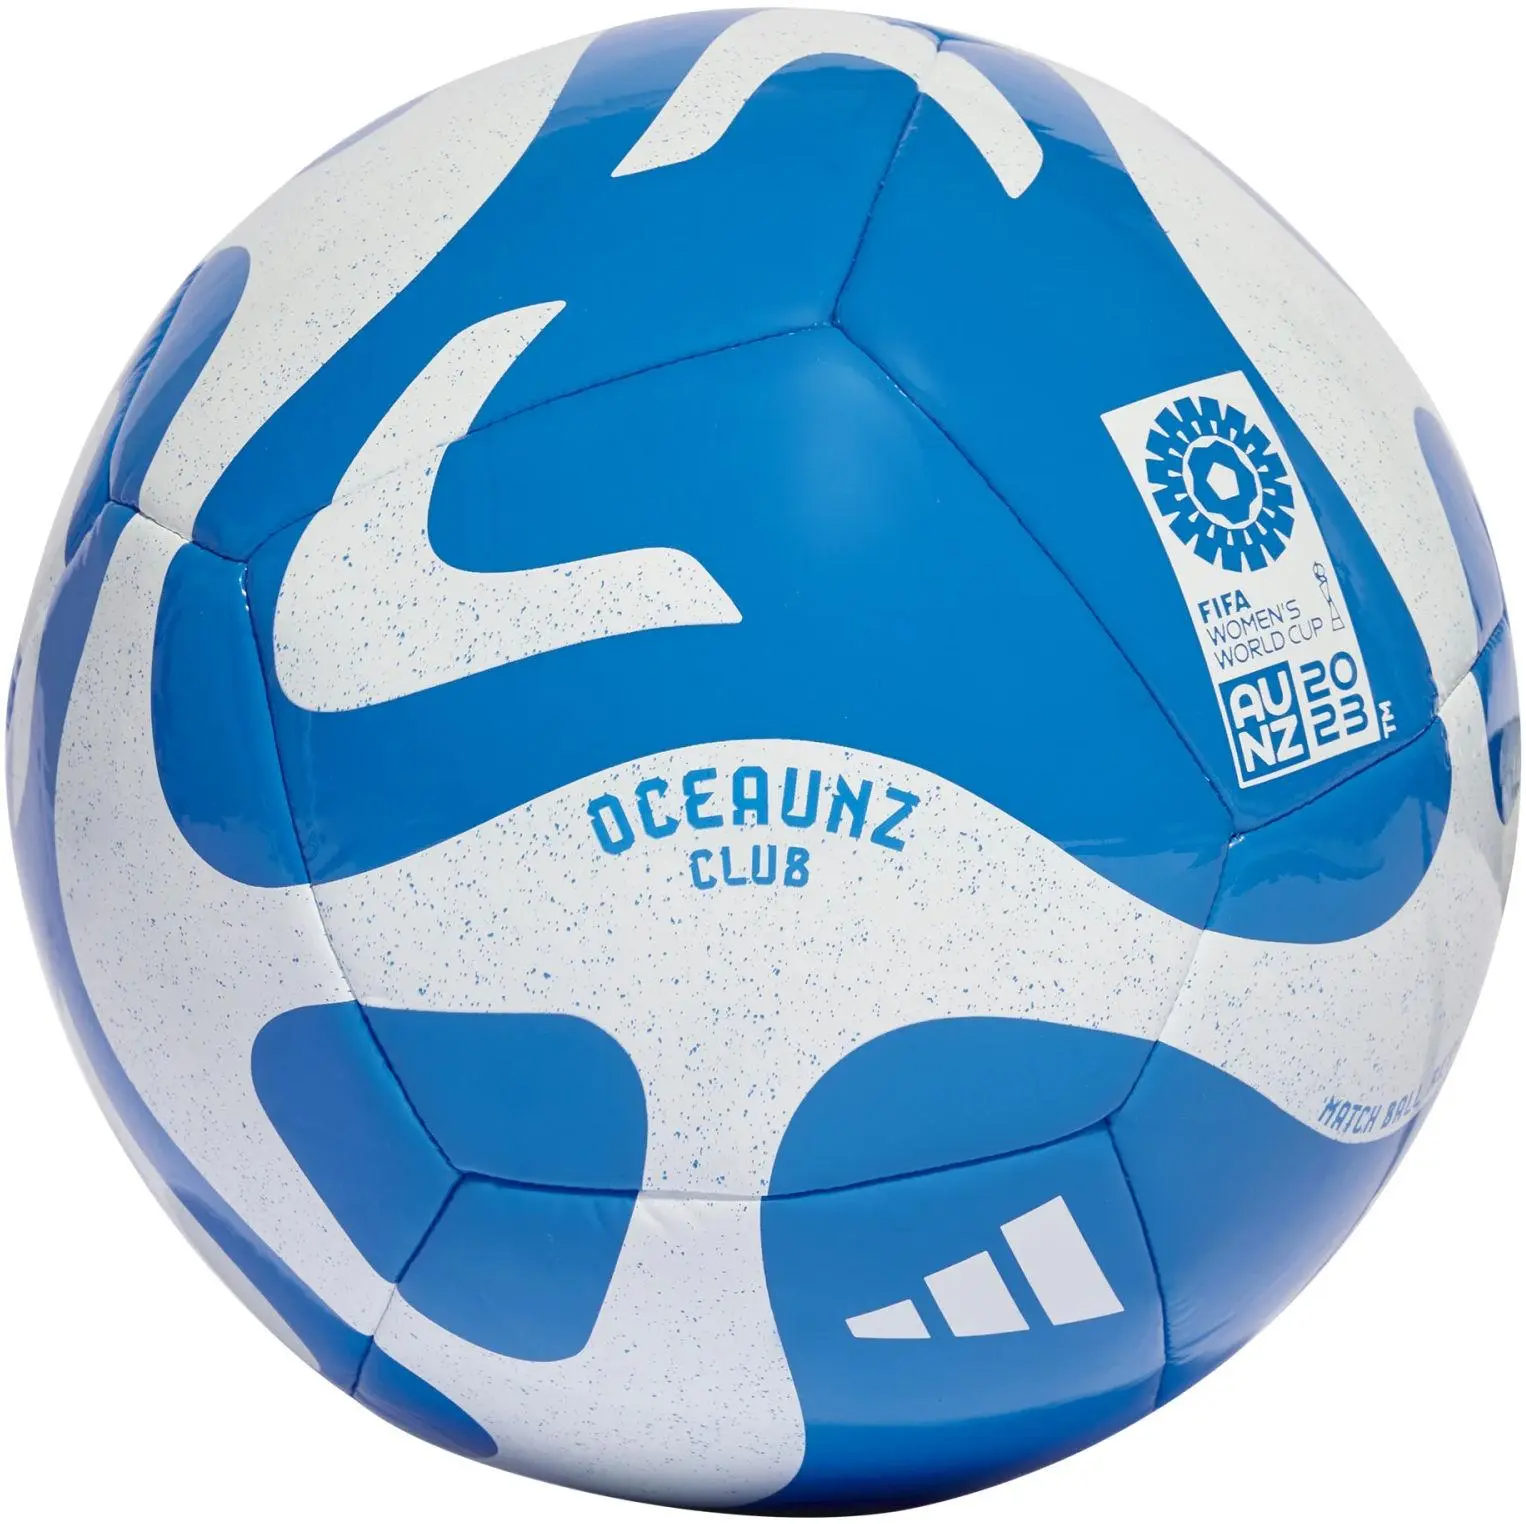 Ballon de Football Adidas Oceaunz Club Blanc / Bleu